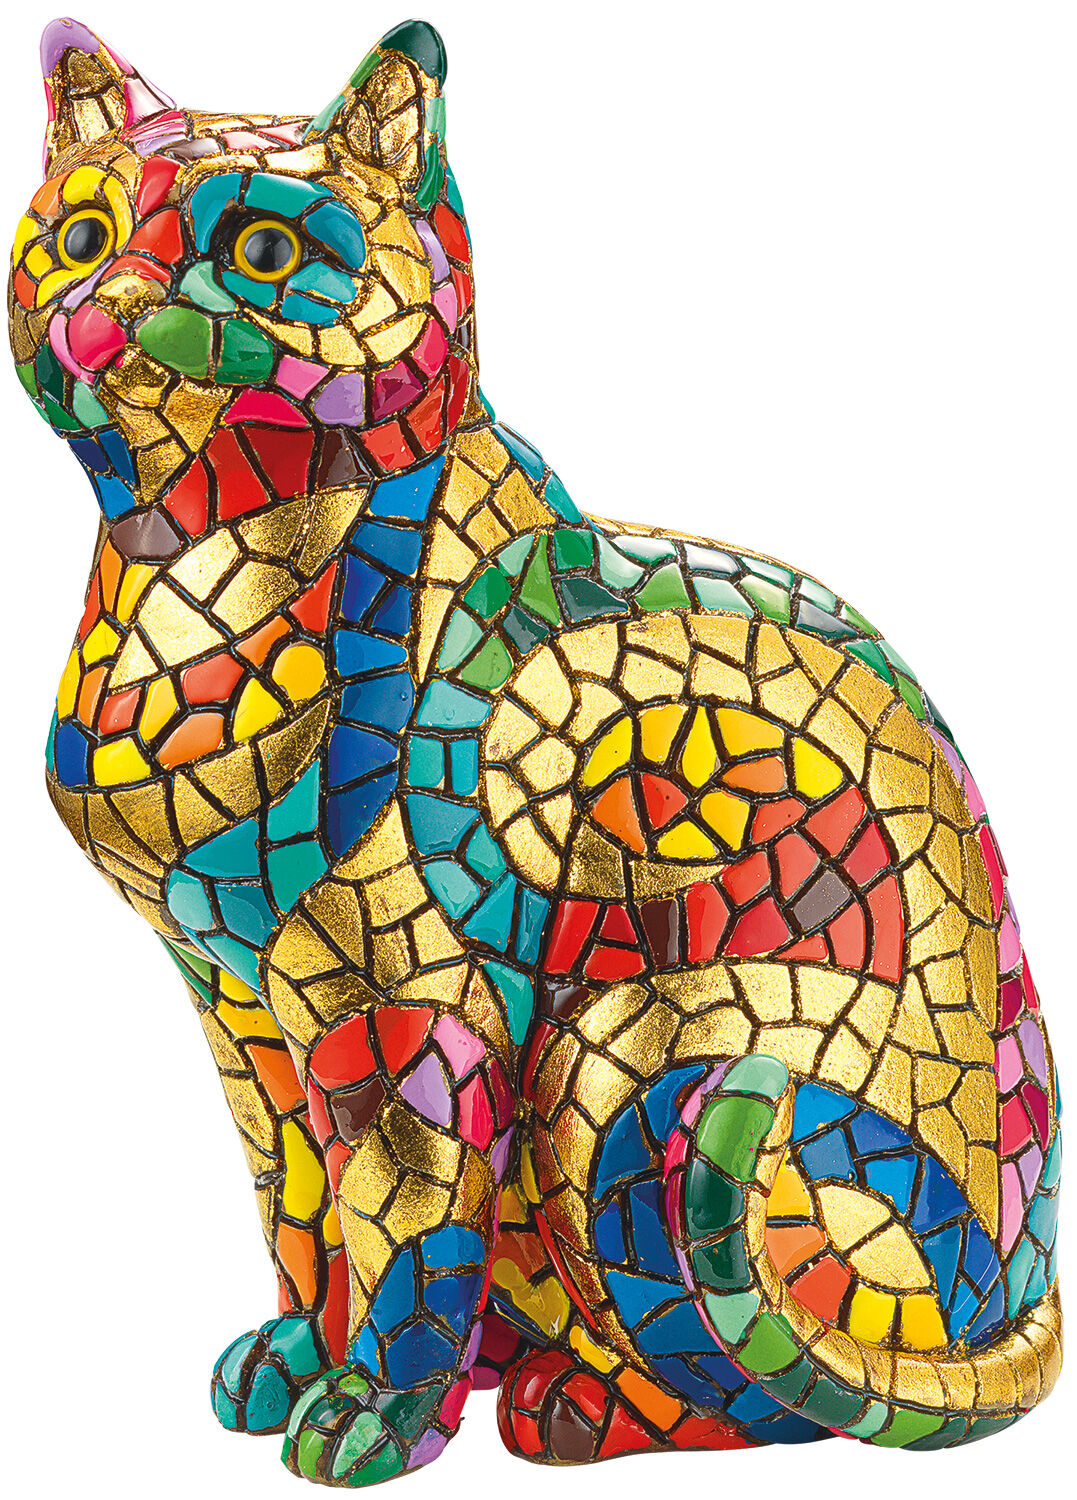 Mosaic figure "Cat"